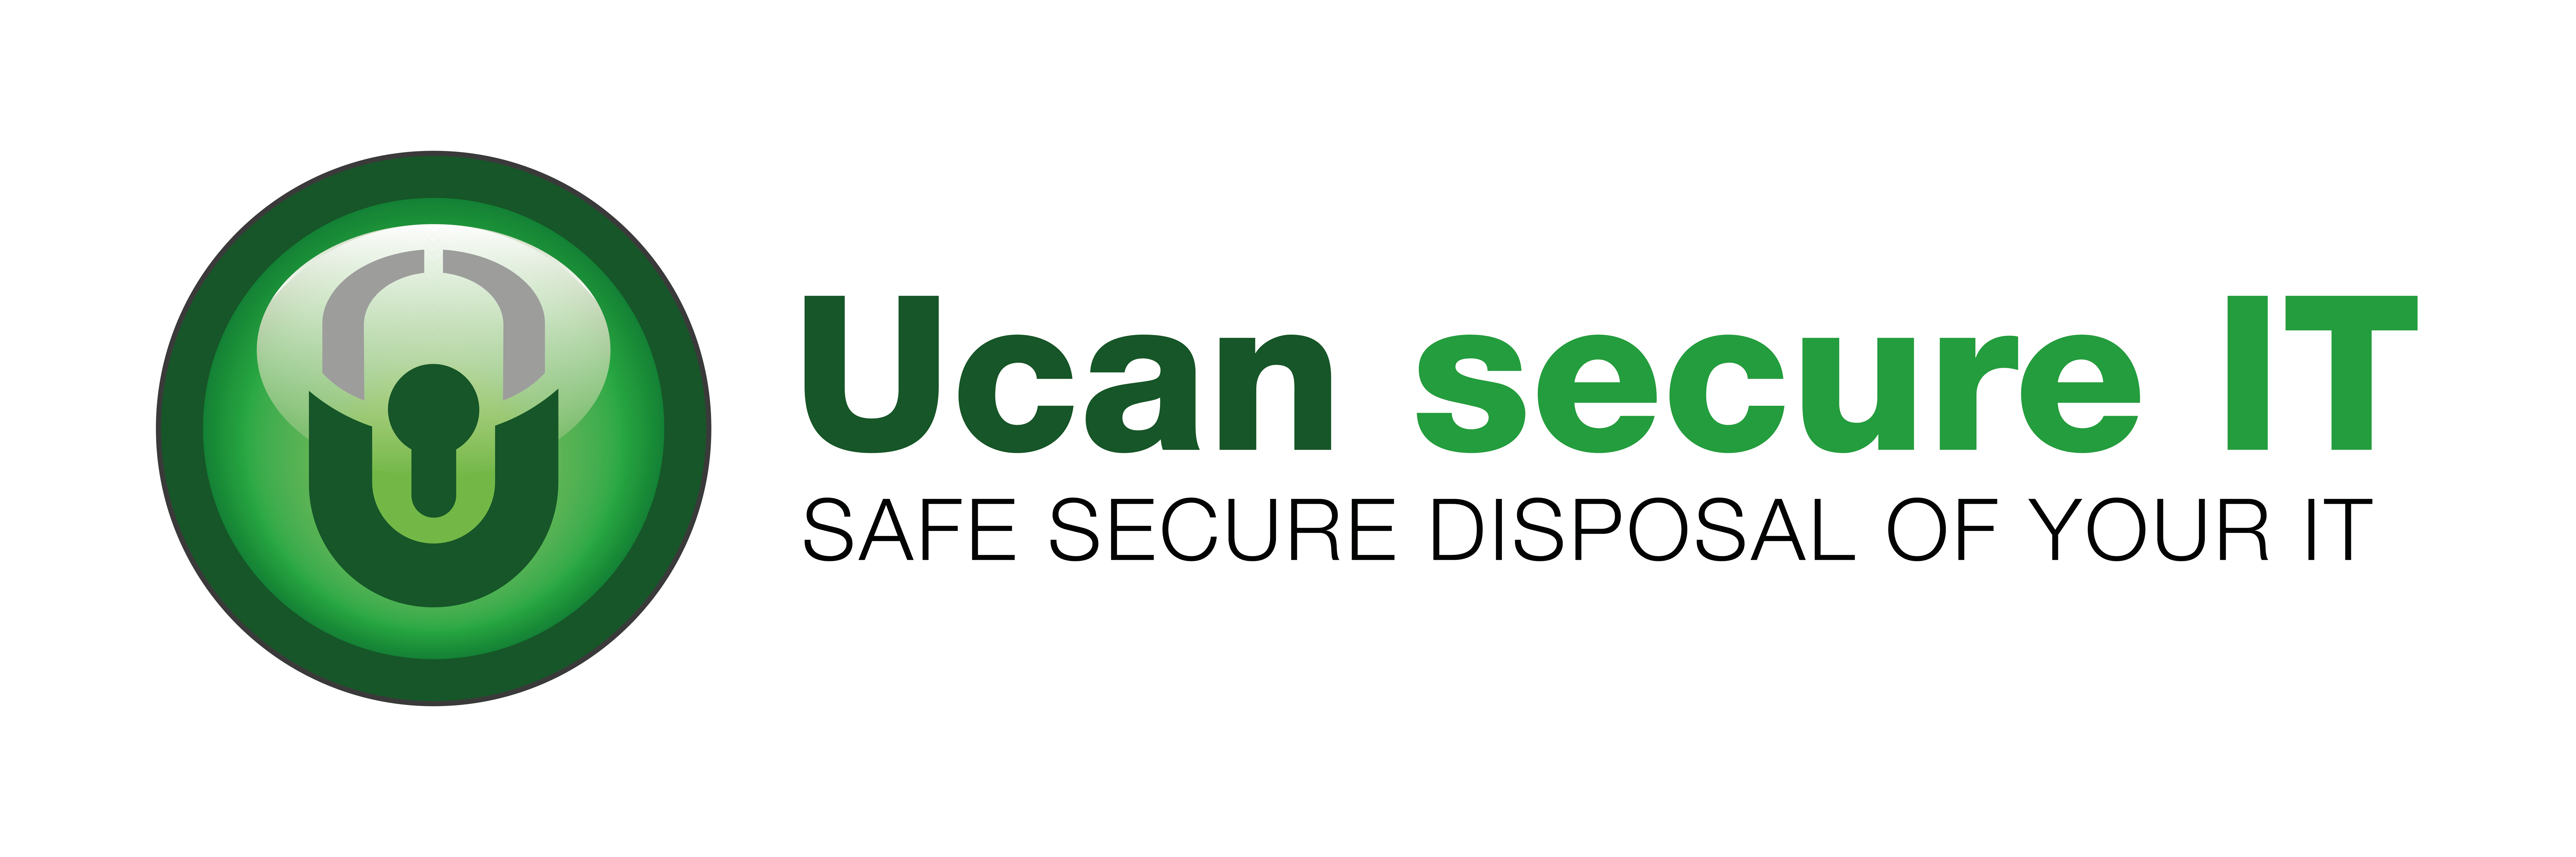 Ucan-Secure-IT-Logo-Final-40-CMYK-01.png